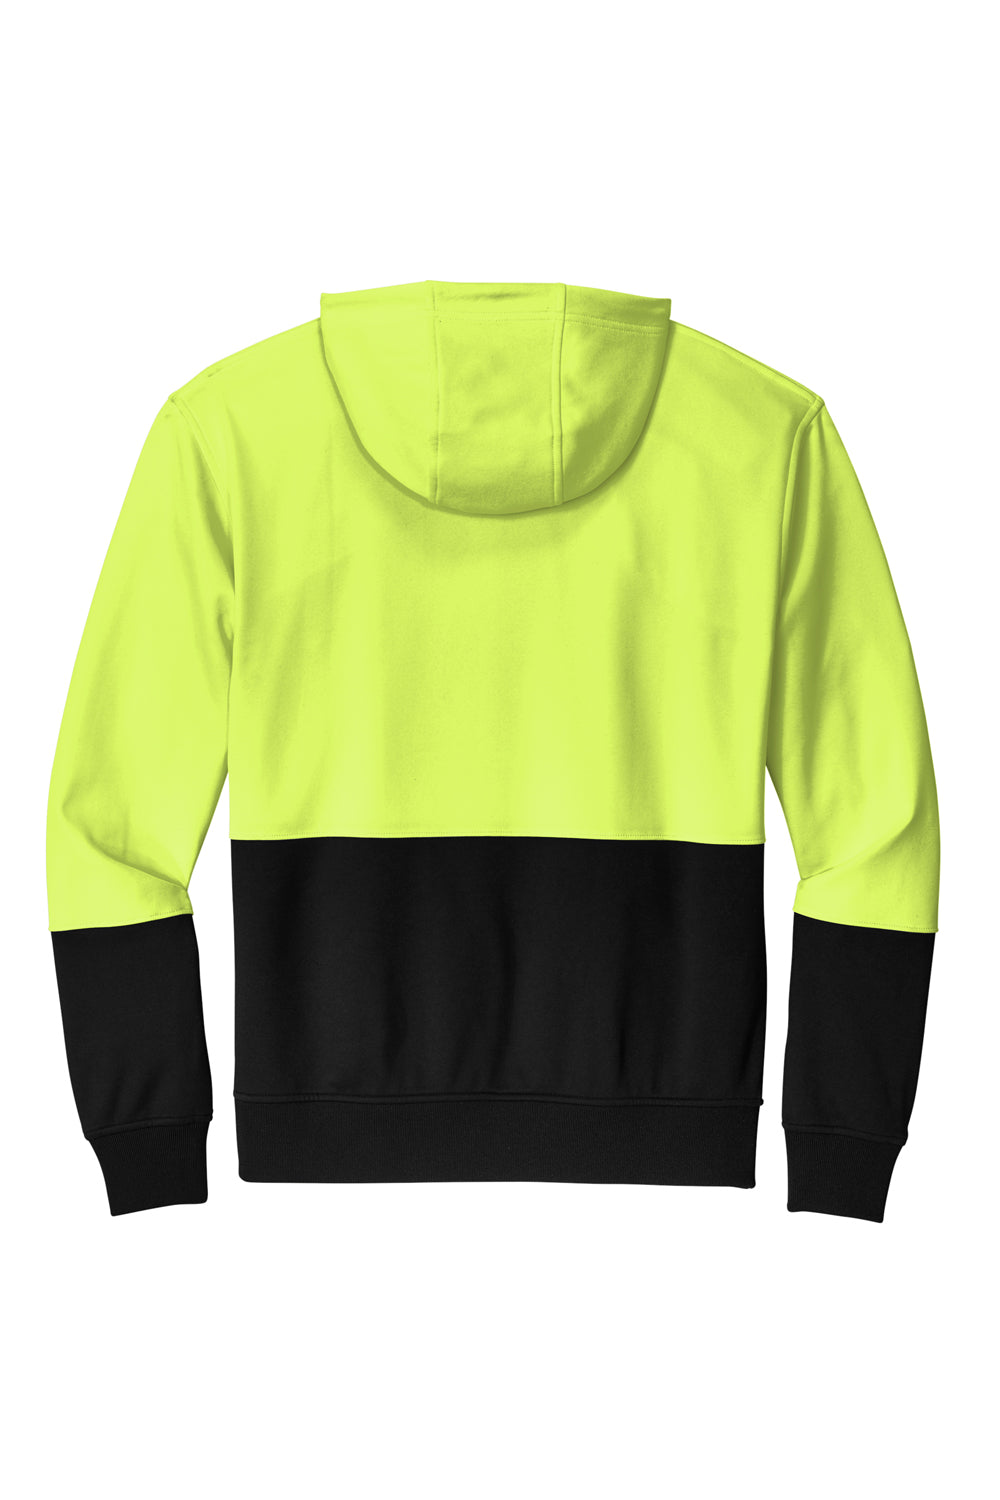 CornerStone CSF01 Enhanced Visibility Fleece Hooded Sweatshirt Hoodie Safety Yellow Flat Back